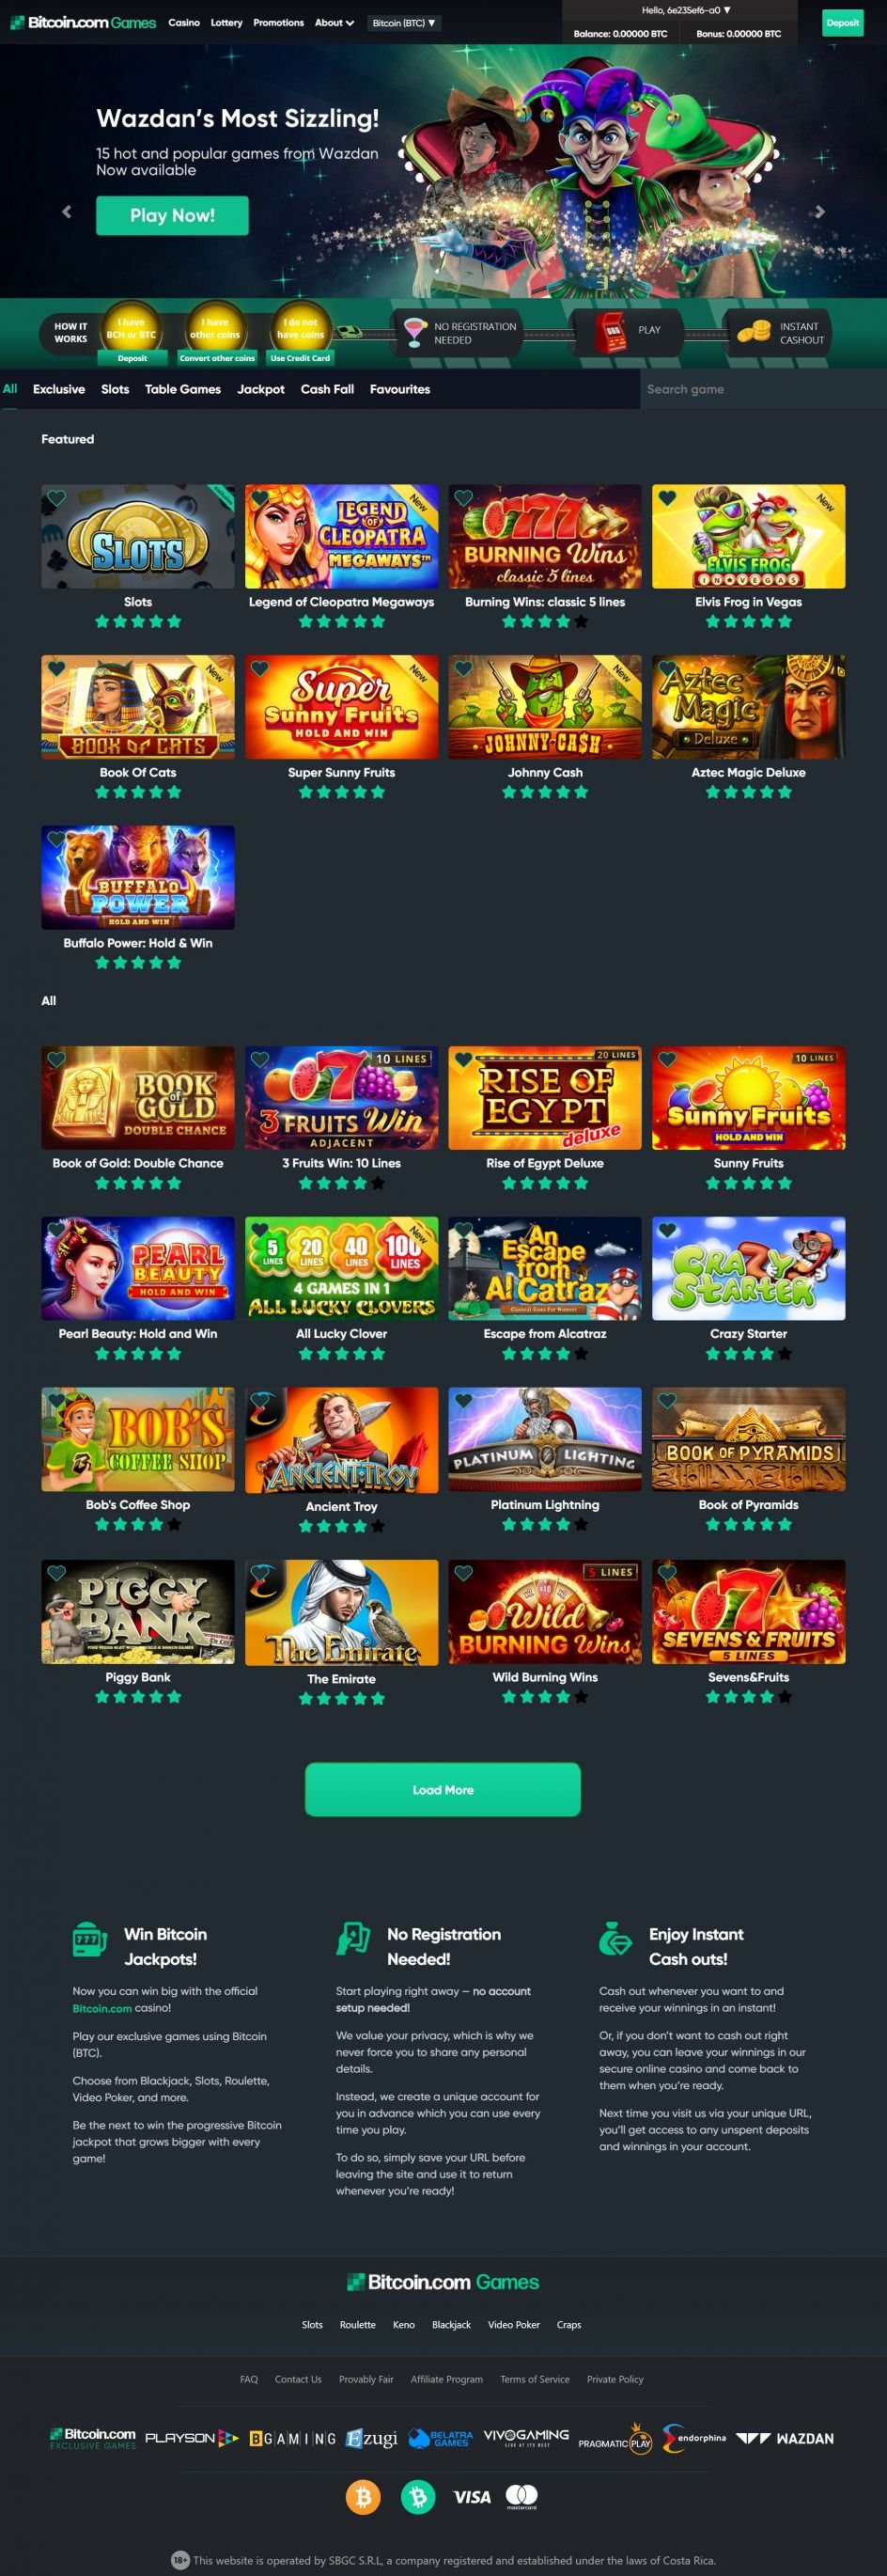 Bitcoin.com Games Casino Design